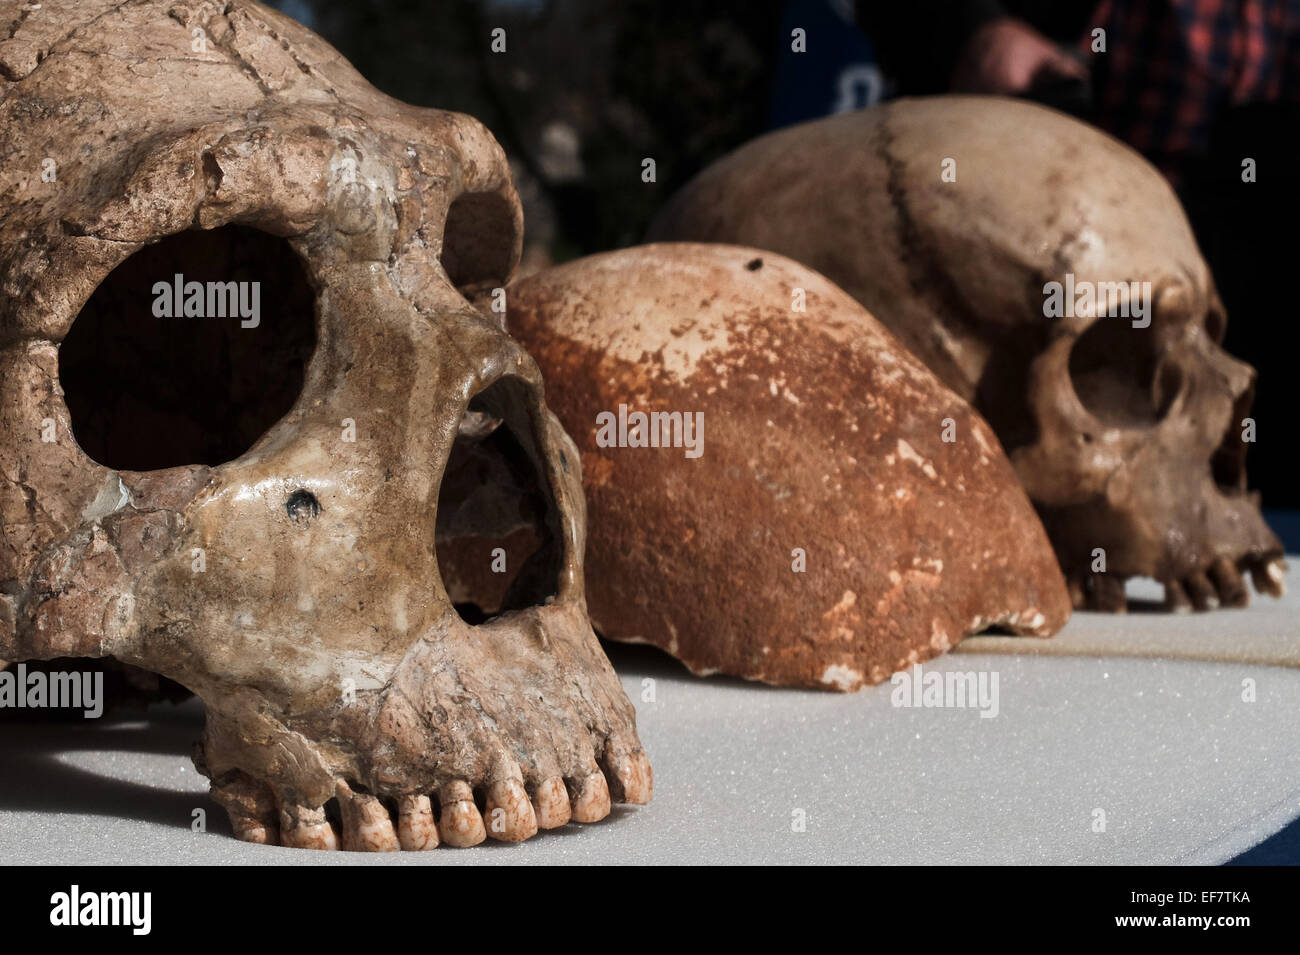 Manot Grotte, Israël. 28 janvier, 2015. Le Manot Cave crâne (C) est comparé à celui d'un homme de Néandertal (L) et d'un Homo sapien crâne (R). 55 000 ans d'un crâne humain découvert dans la grotte de Manot dans l'ouest de la Galilée prouve, selon les scientifiques, que l'homme moderne (Homo sapiens) a migré depuis l'Afrique vers le reste du monde il y a environ 65 000 ans. Chercheurs considèrent le crâne, la première preuve fossilisée à l'extérieur de l'Afrique, 'l'une des plus importantes découvertes dans l'étude de l'évolution humaine. Credit : Alon Nir/Alamy Live News Banque D'Images